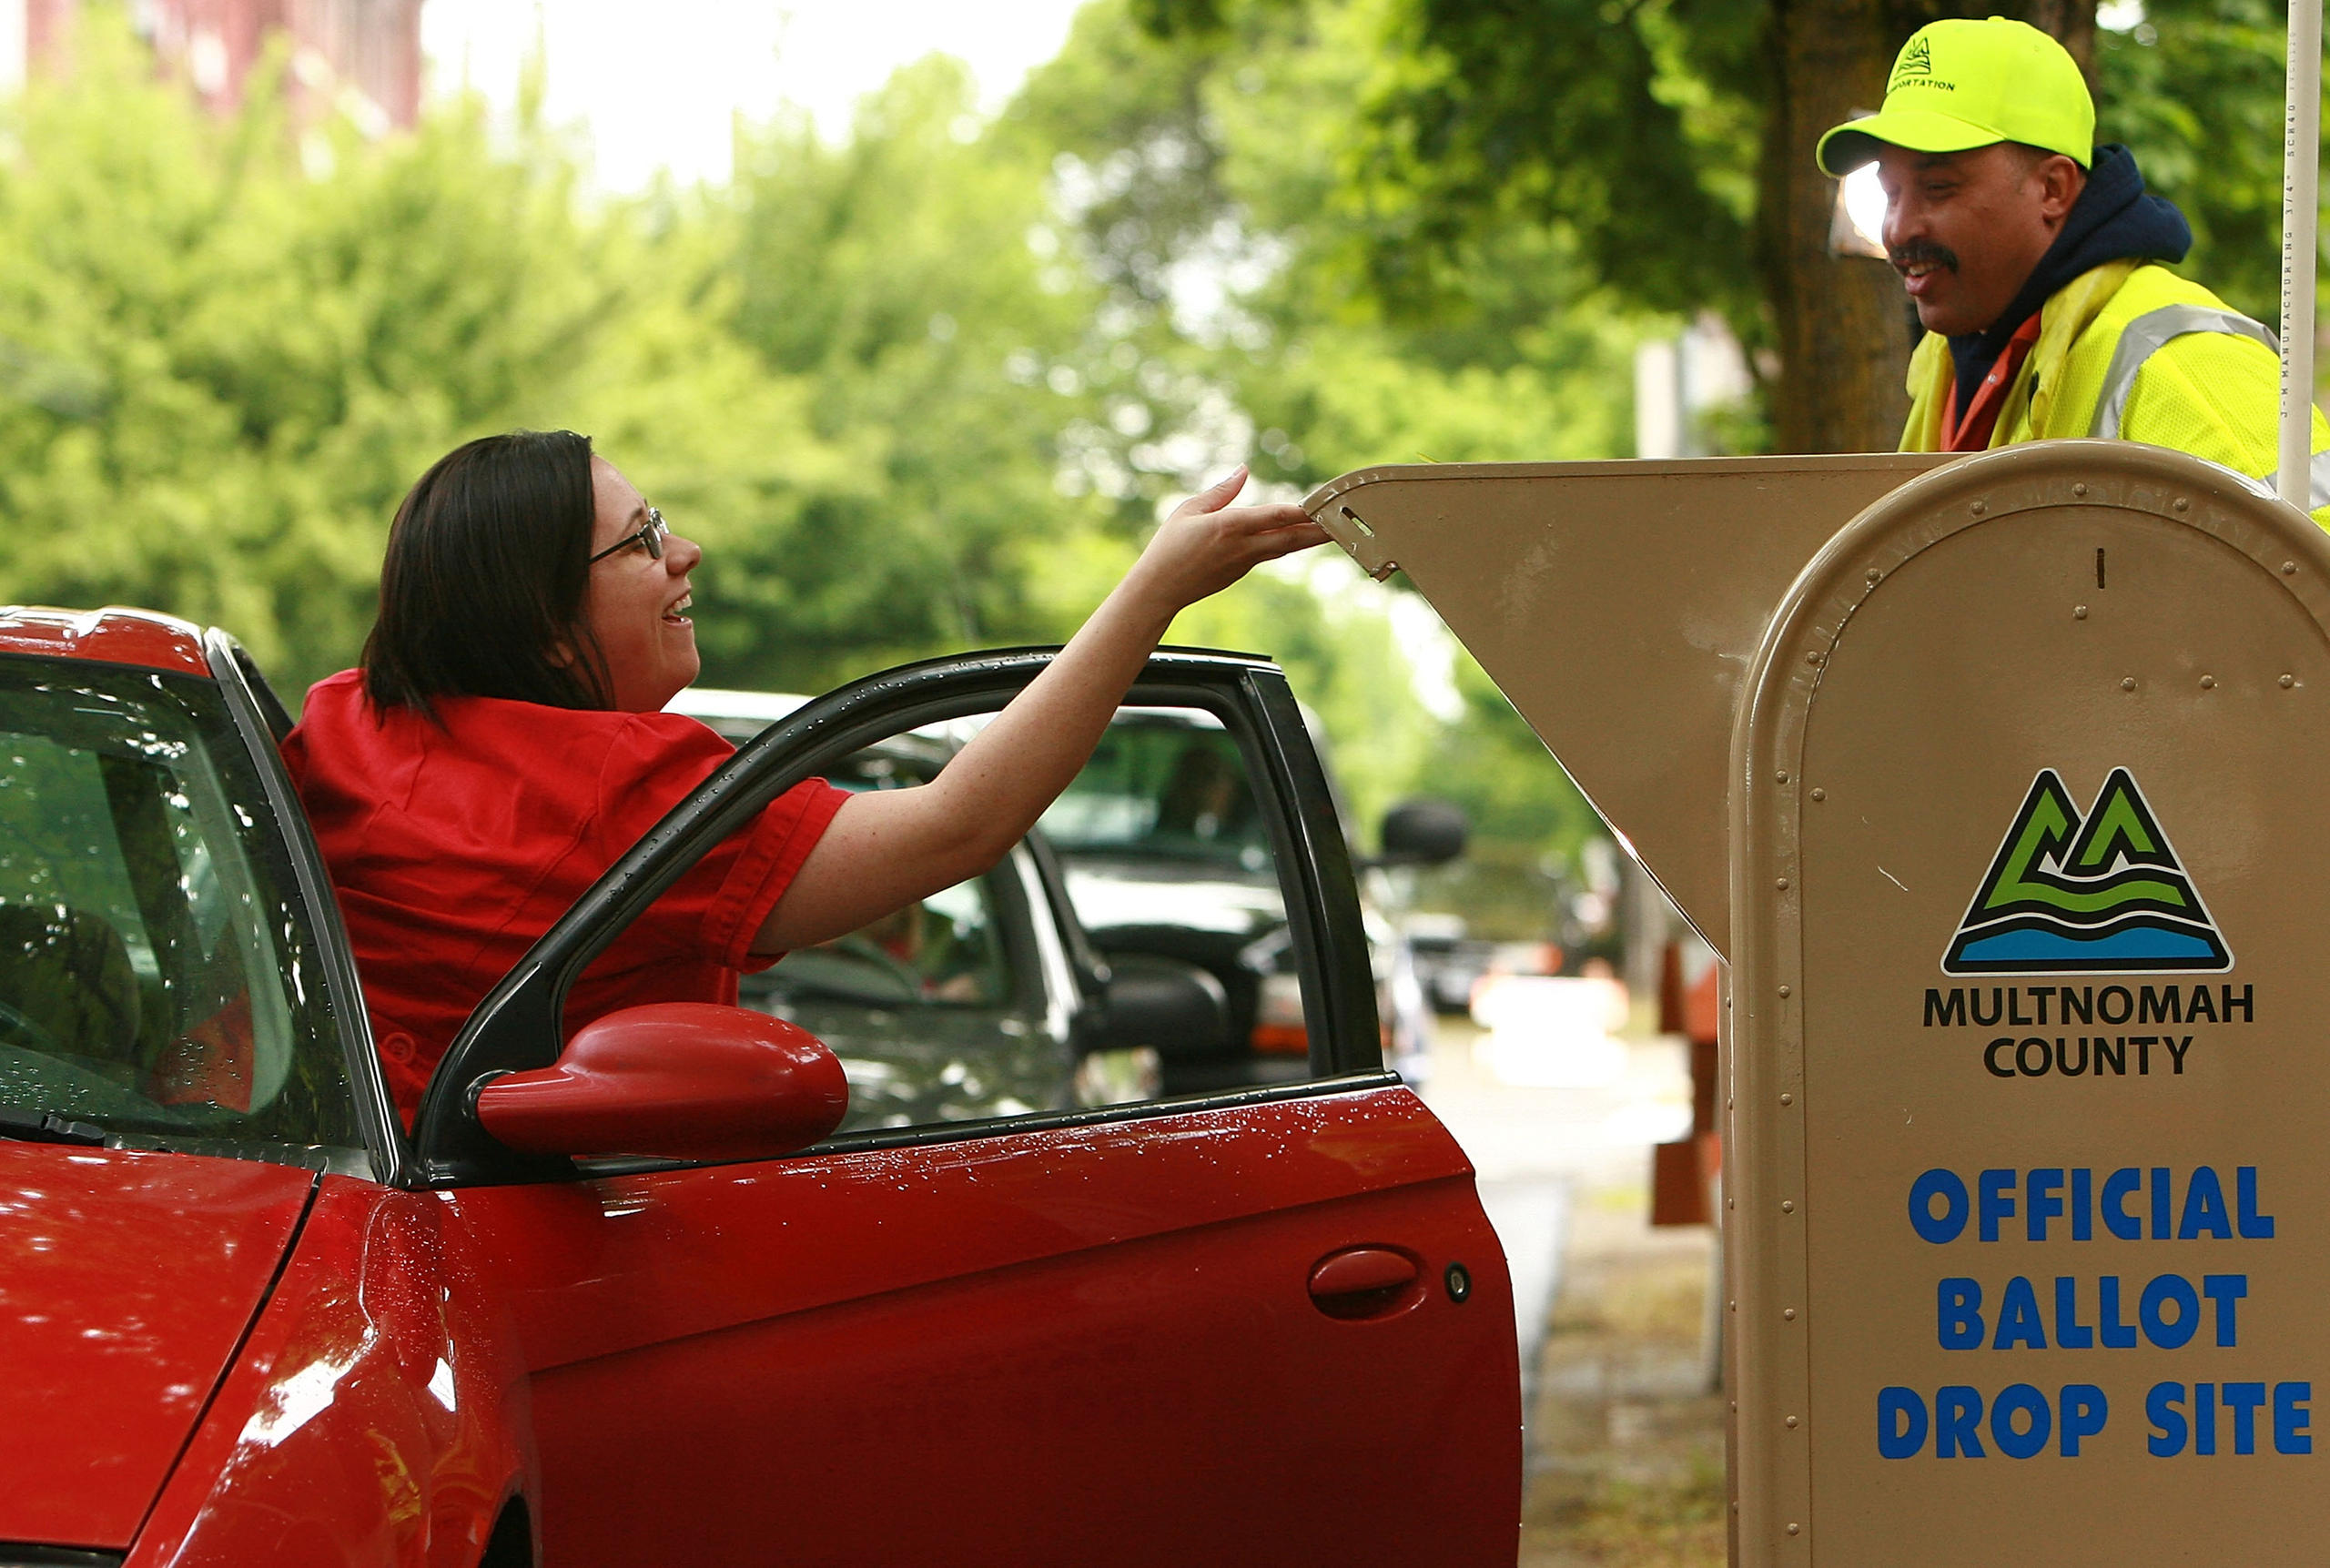 Una donna esce da un auto e mette la scheda di voto in un urna sul marciapiede.